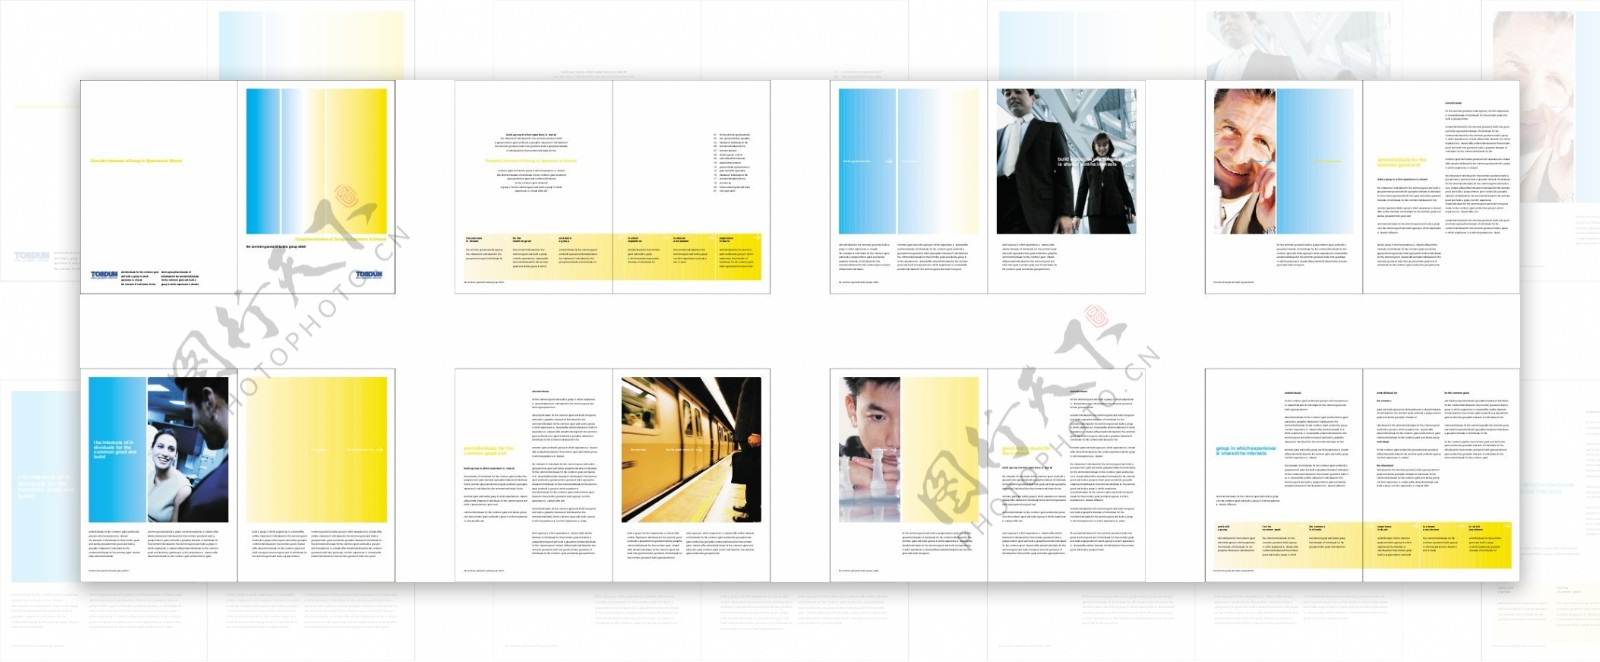 商务企业文化画册排版图片